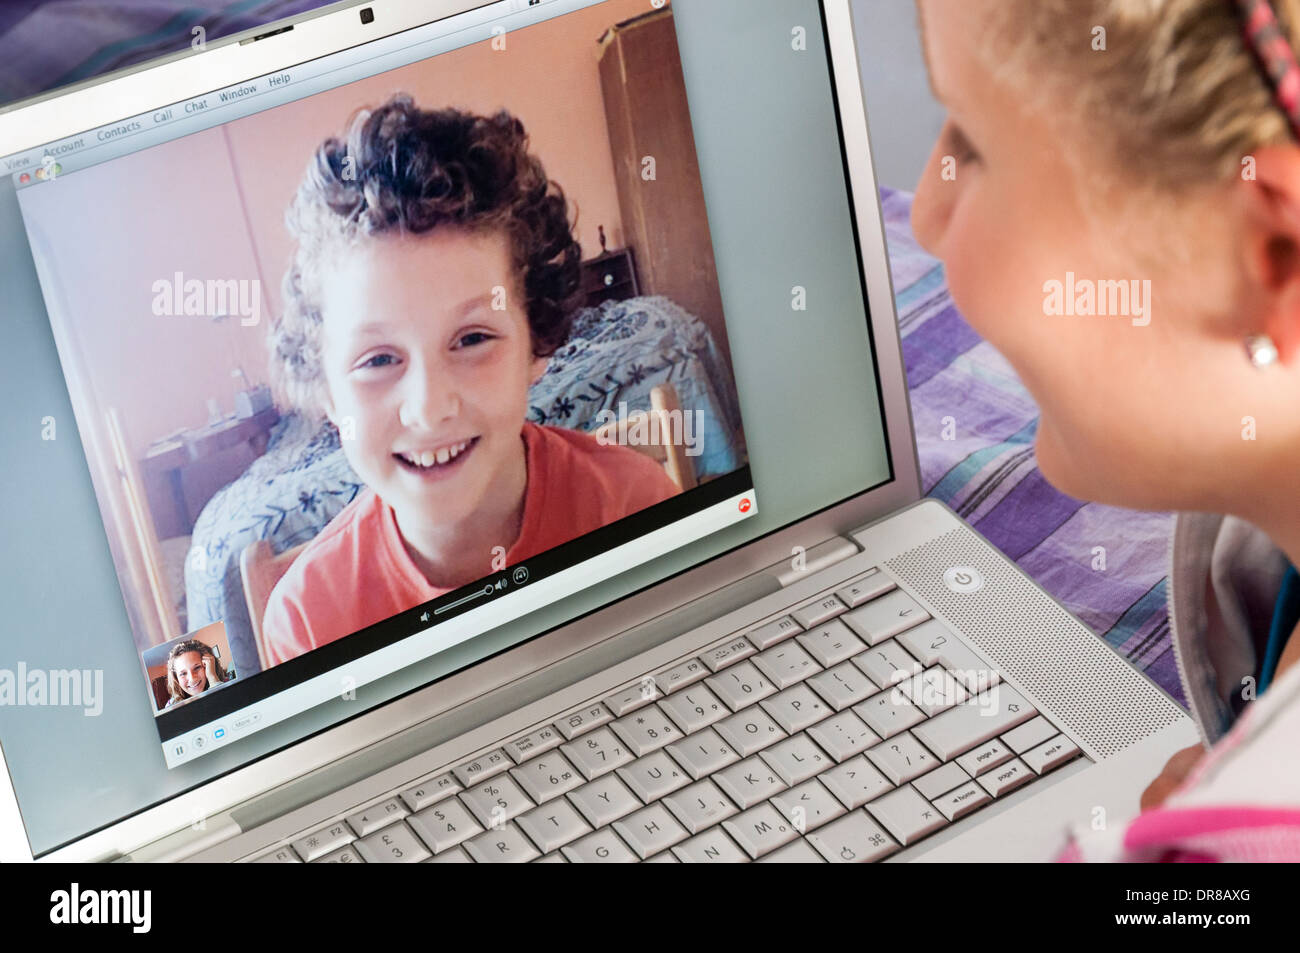 Children talking on Skype on Apple laptop computer, England, UK Stock Photo